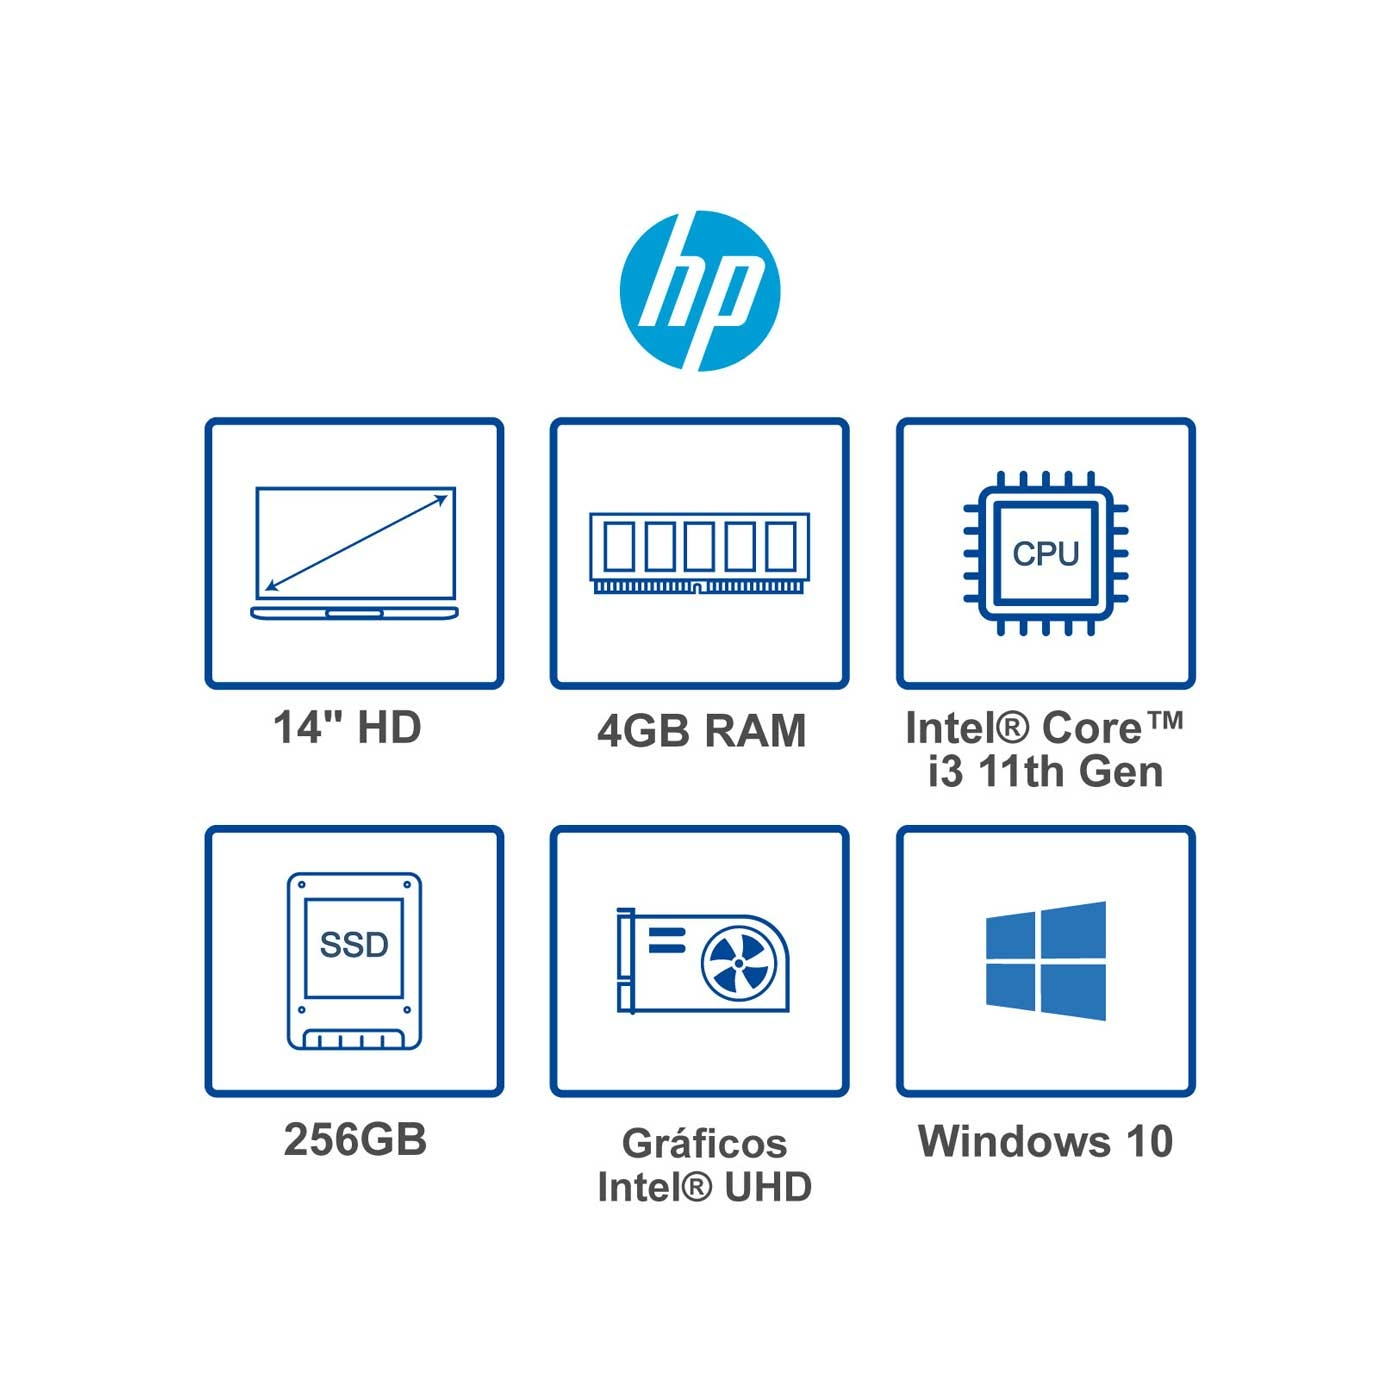 Computador Portátil HP 14" Pulgadas dq2021la - Intel Core i3 - RAM 4GB - Disco SSD 256 GB - Plata Natural